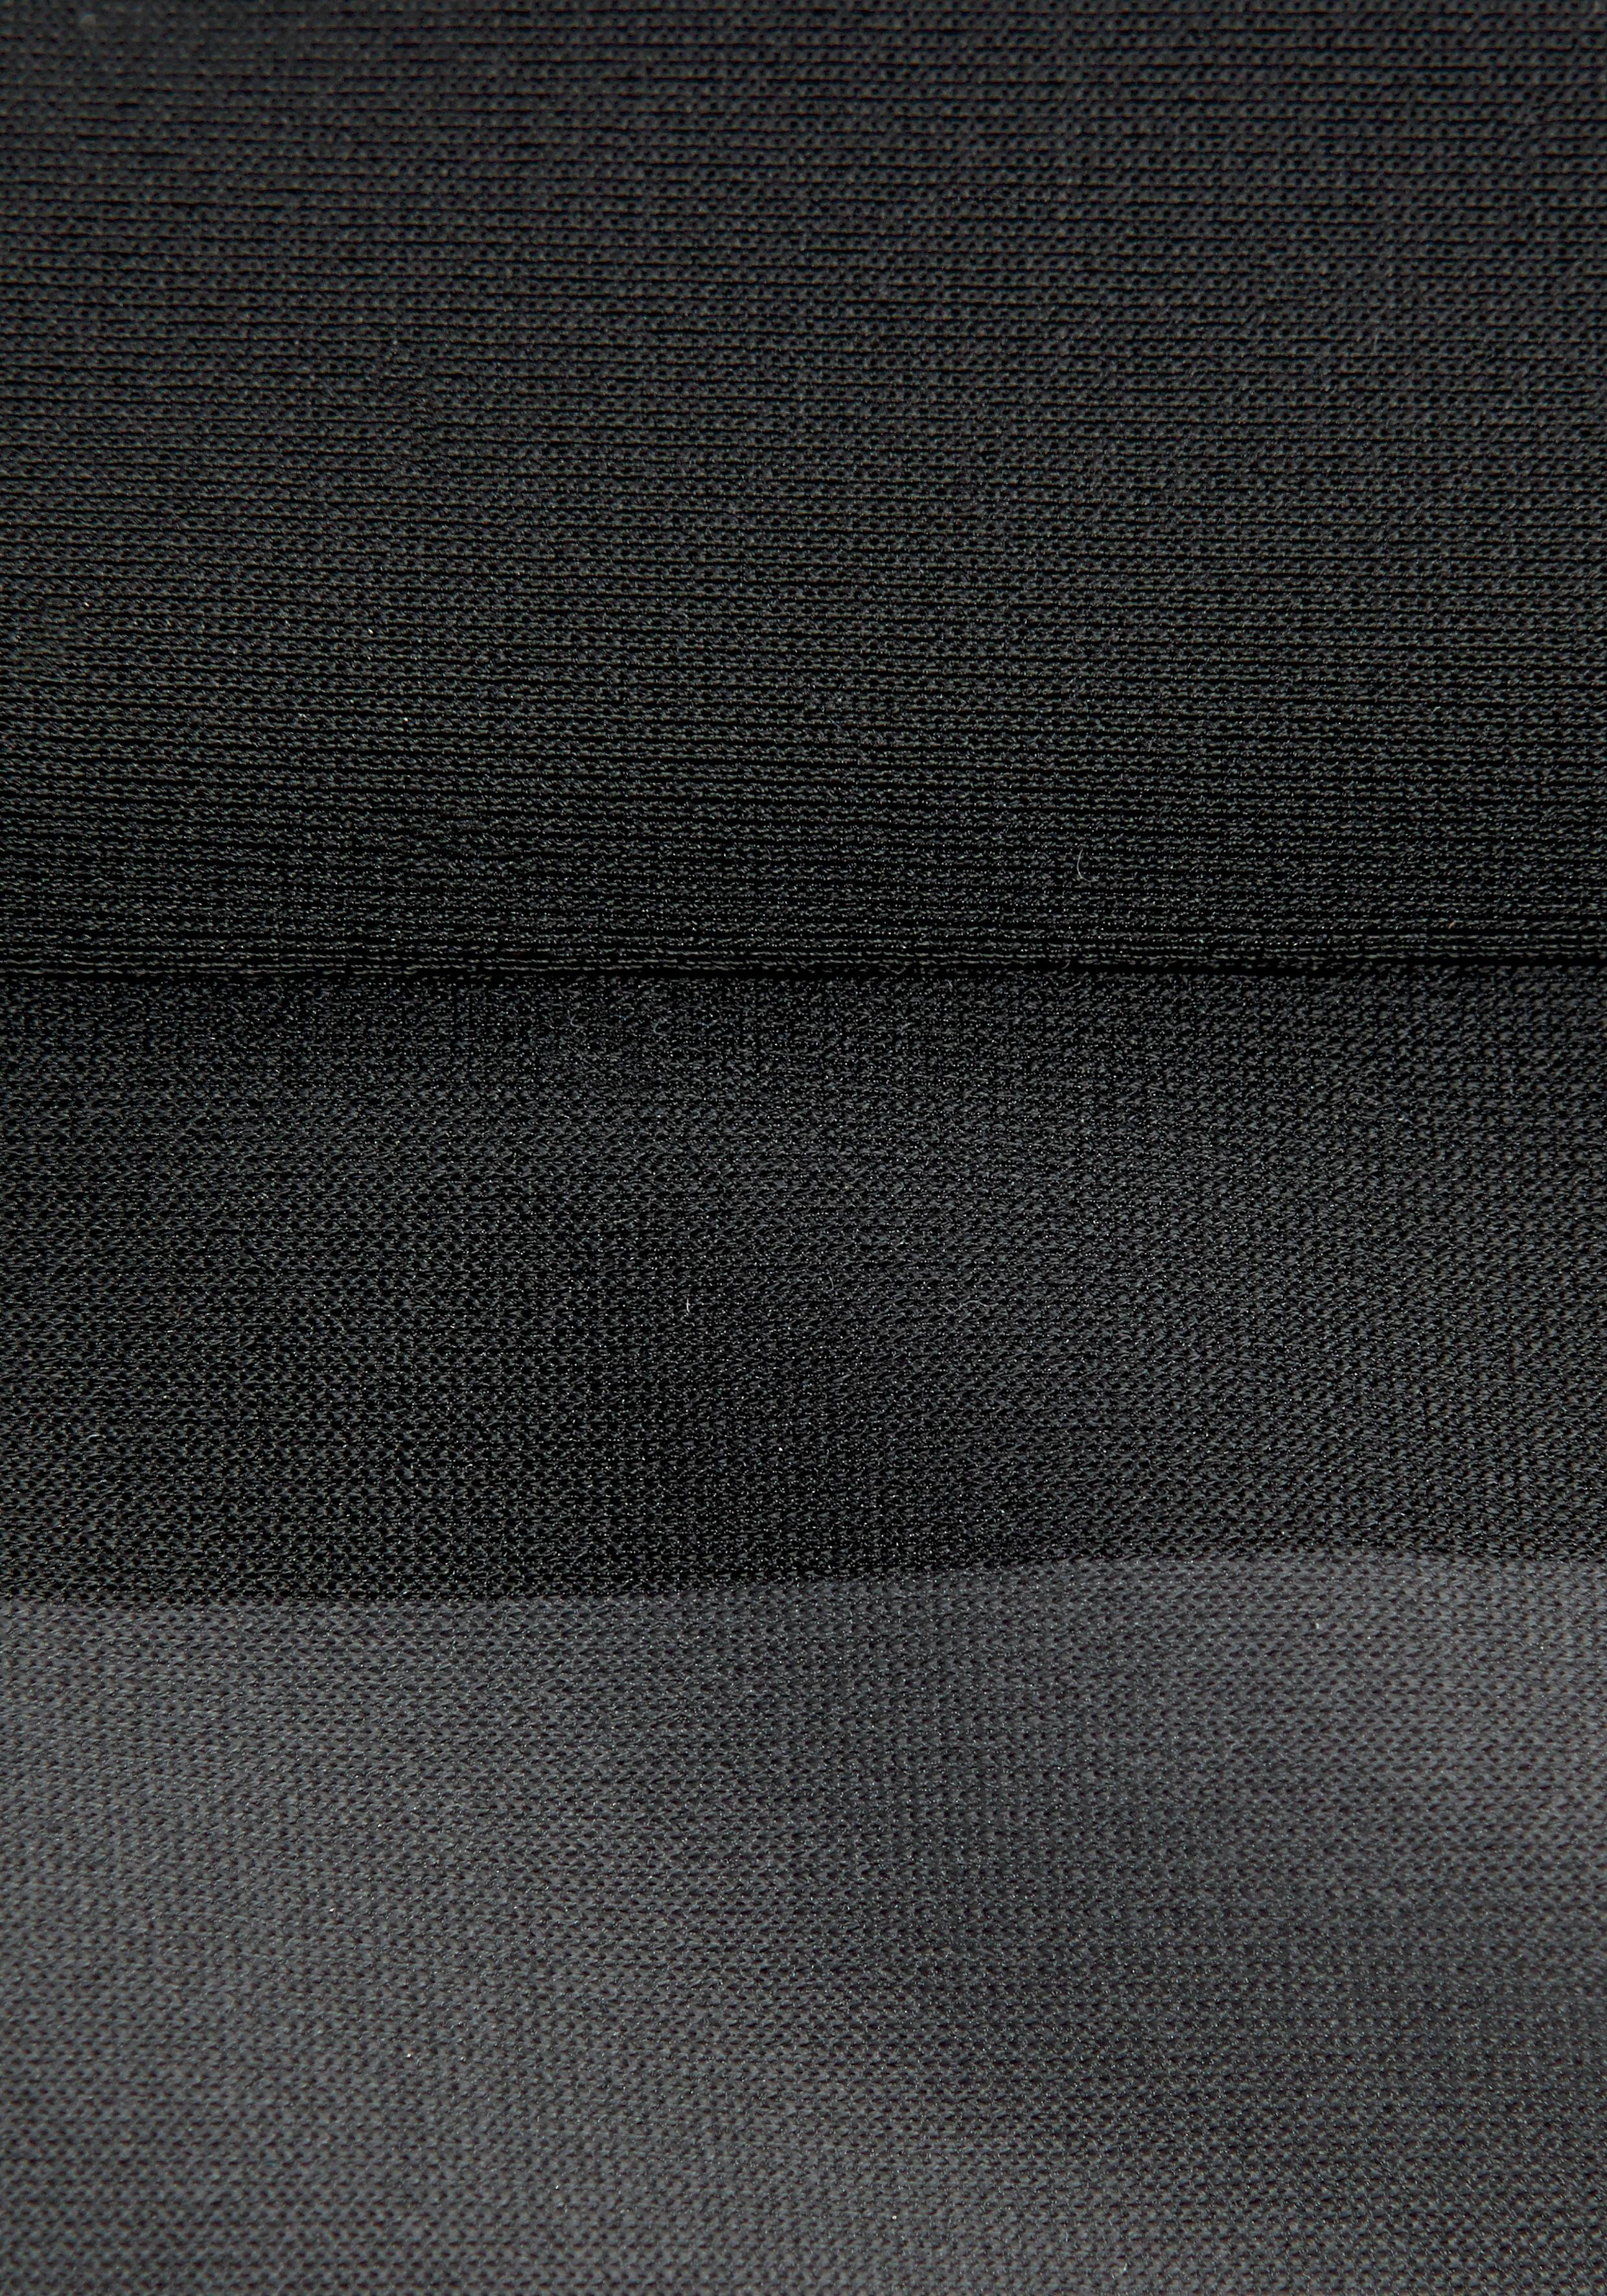 großem schwarz-grau Bandeau-Bikini mit Logoprint Bench.